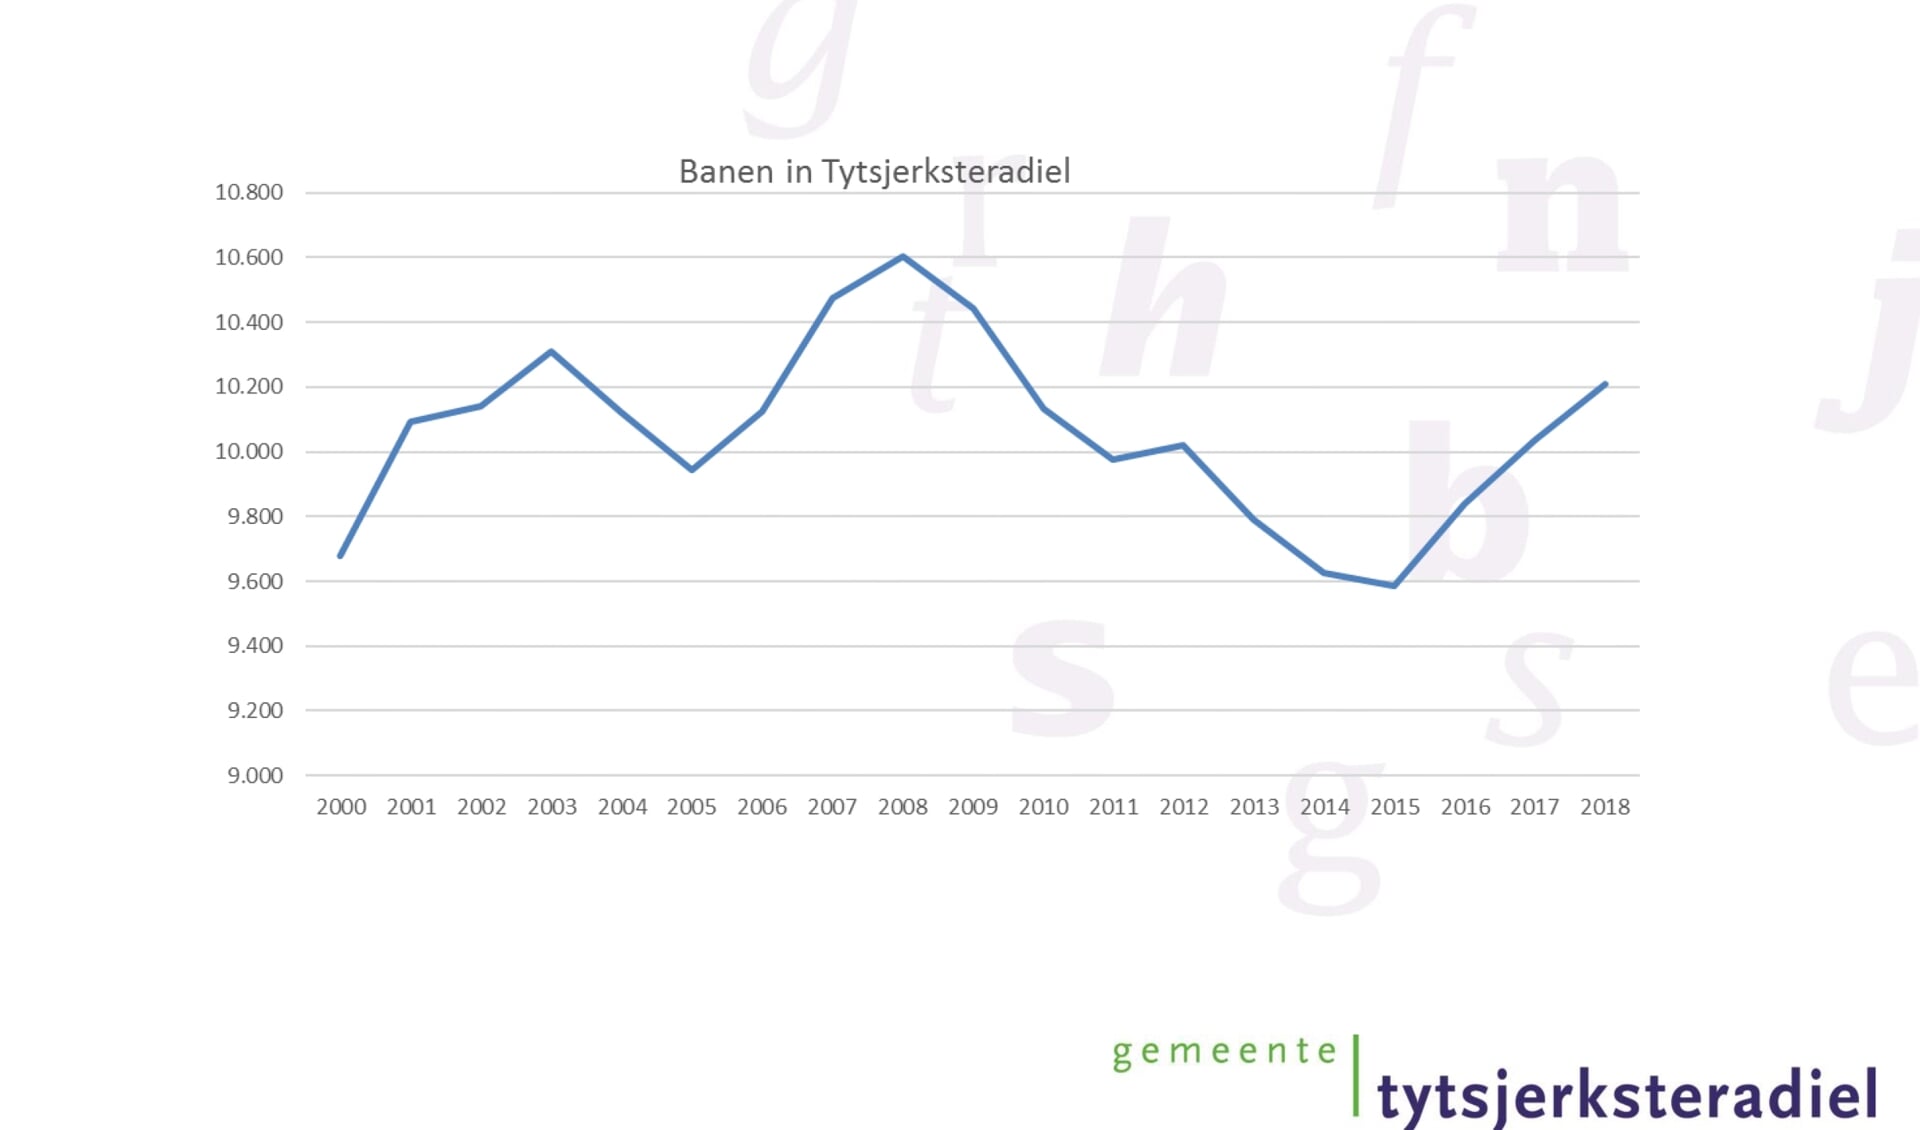 Een grafiek uit de powerpointpresentatie van de gemeente Tytsjerksteradiel die de banenontwikkeling in de gemeente weergeeft.